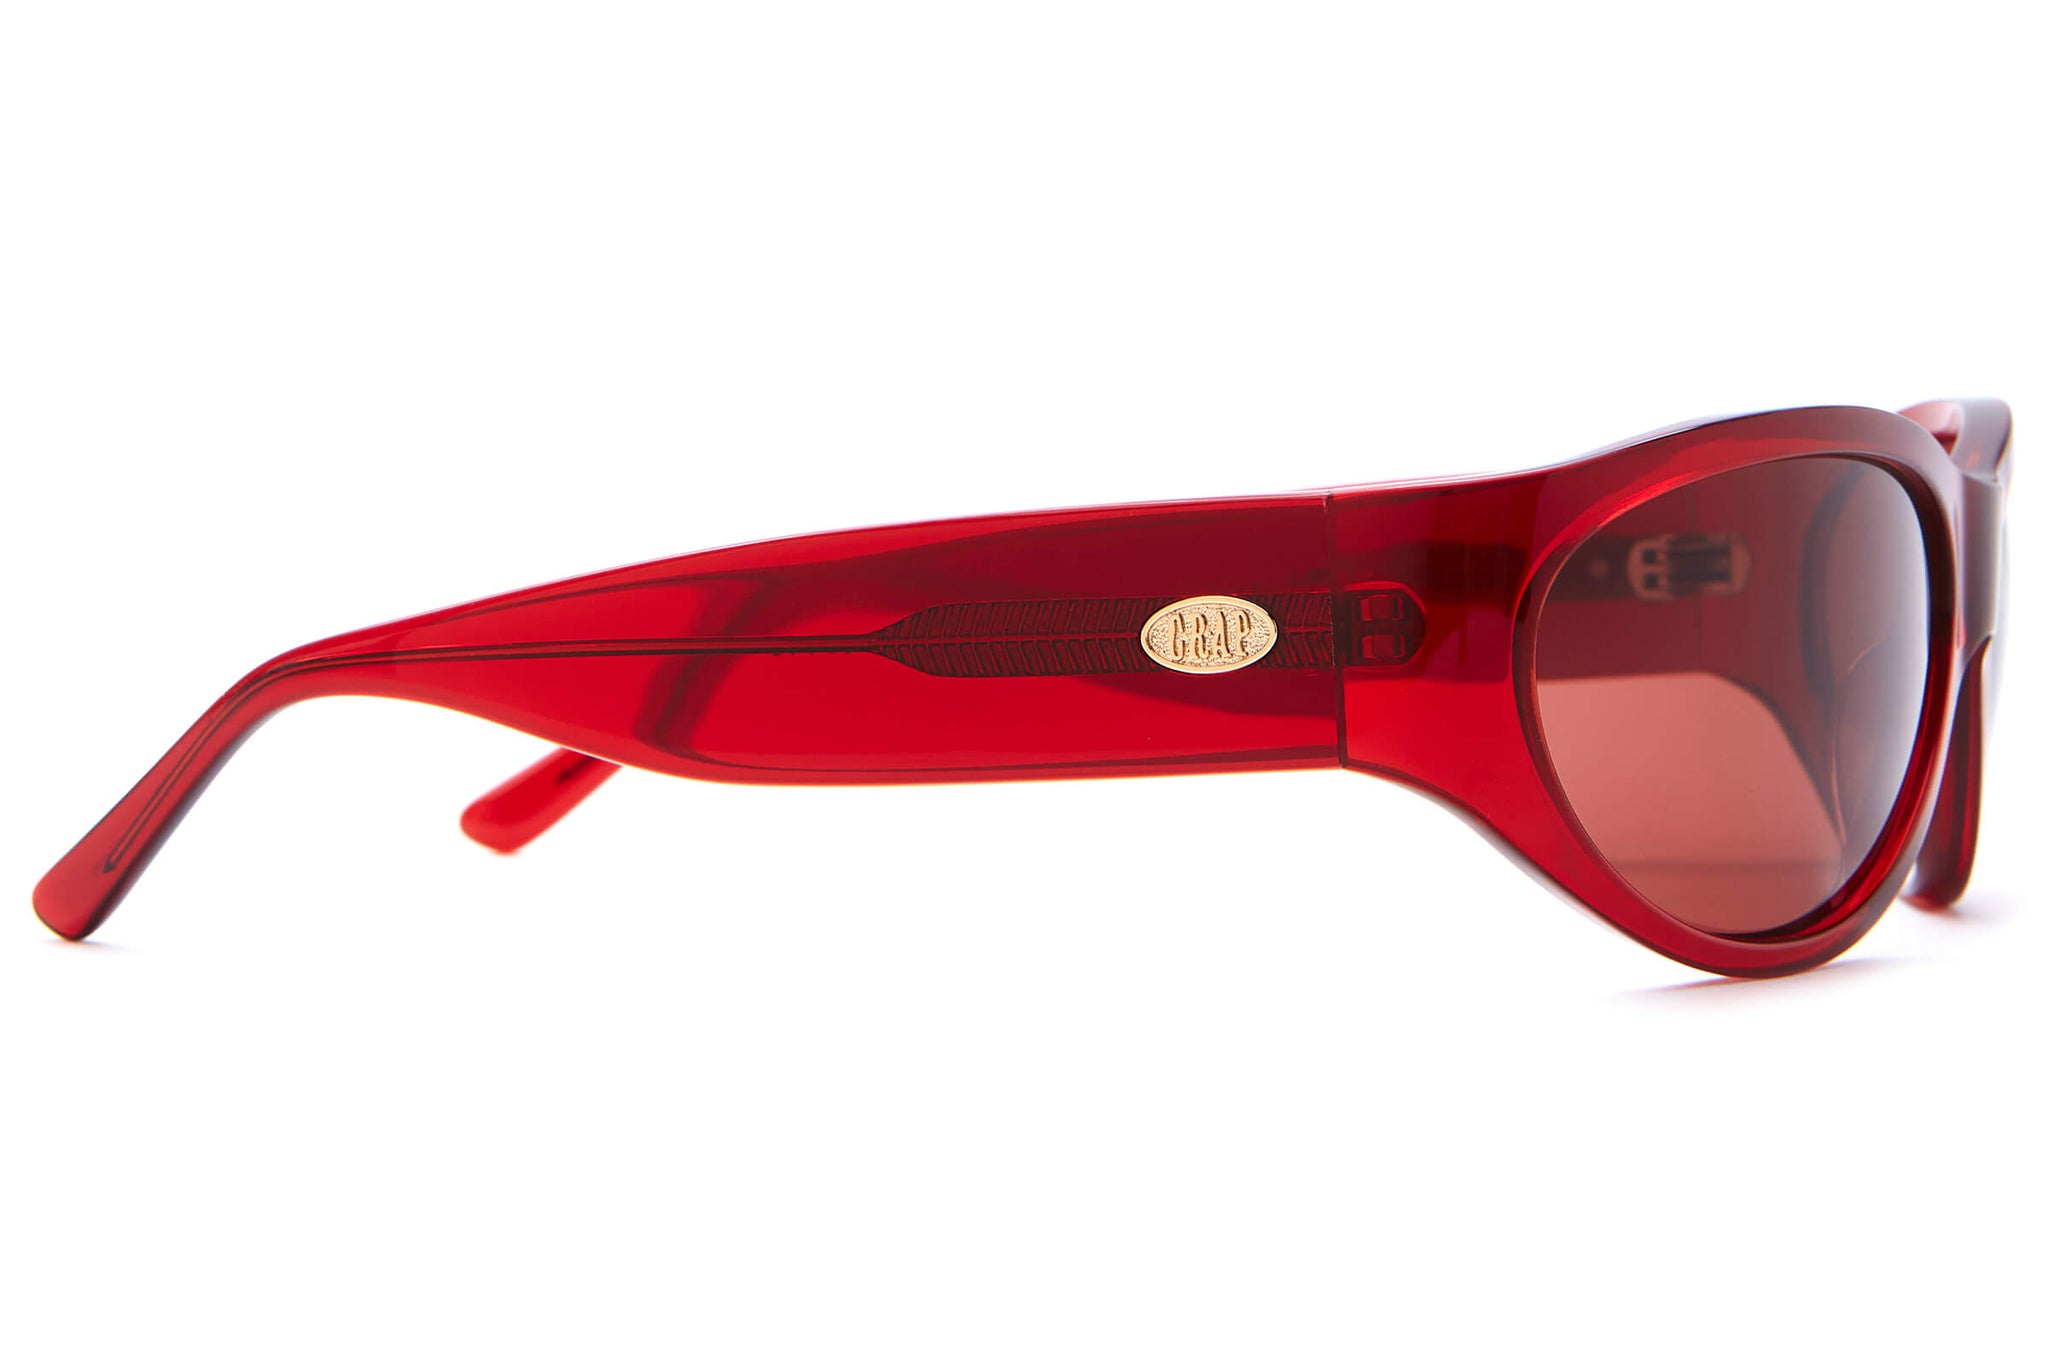 Factory Square Plastic Sunglasses - Red